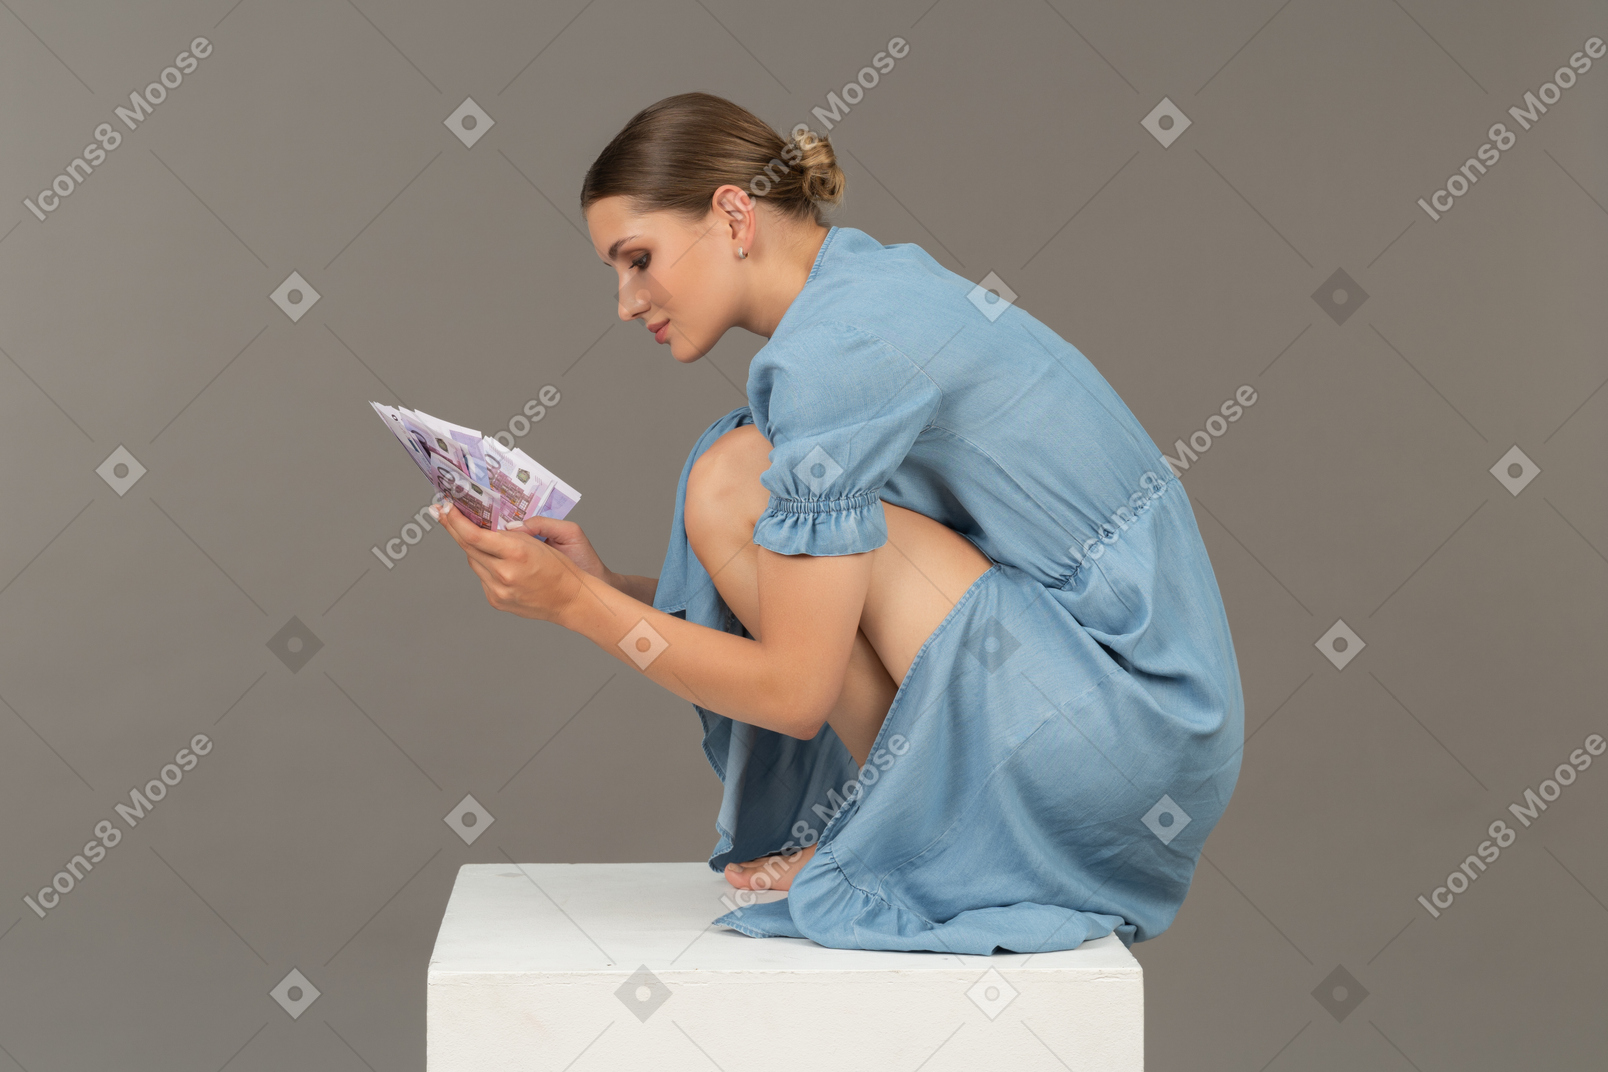 Vista lateral de uma jovem sentada no cubo com um monte de notas